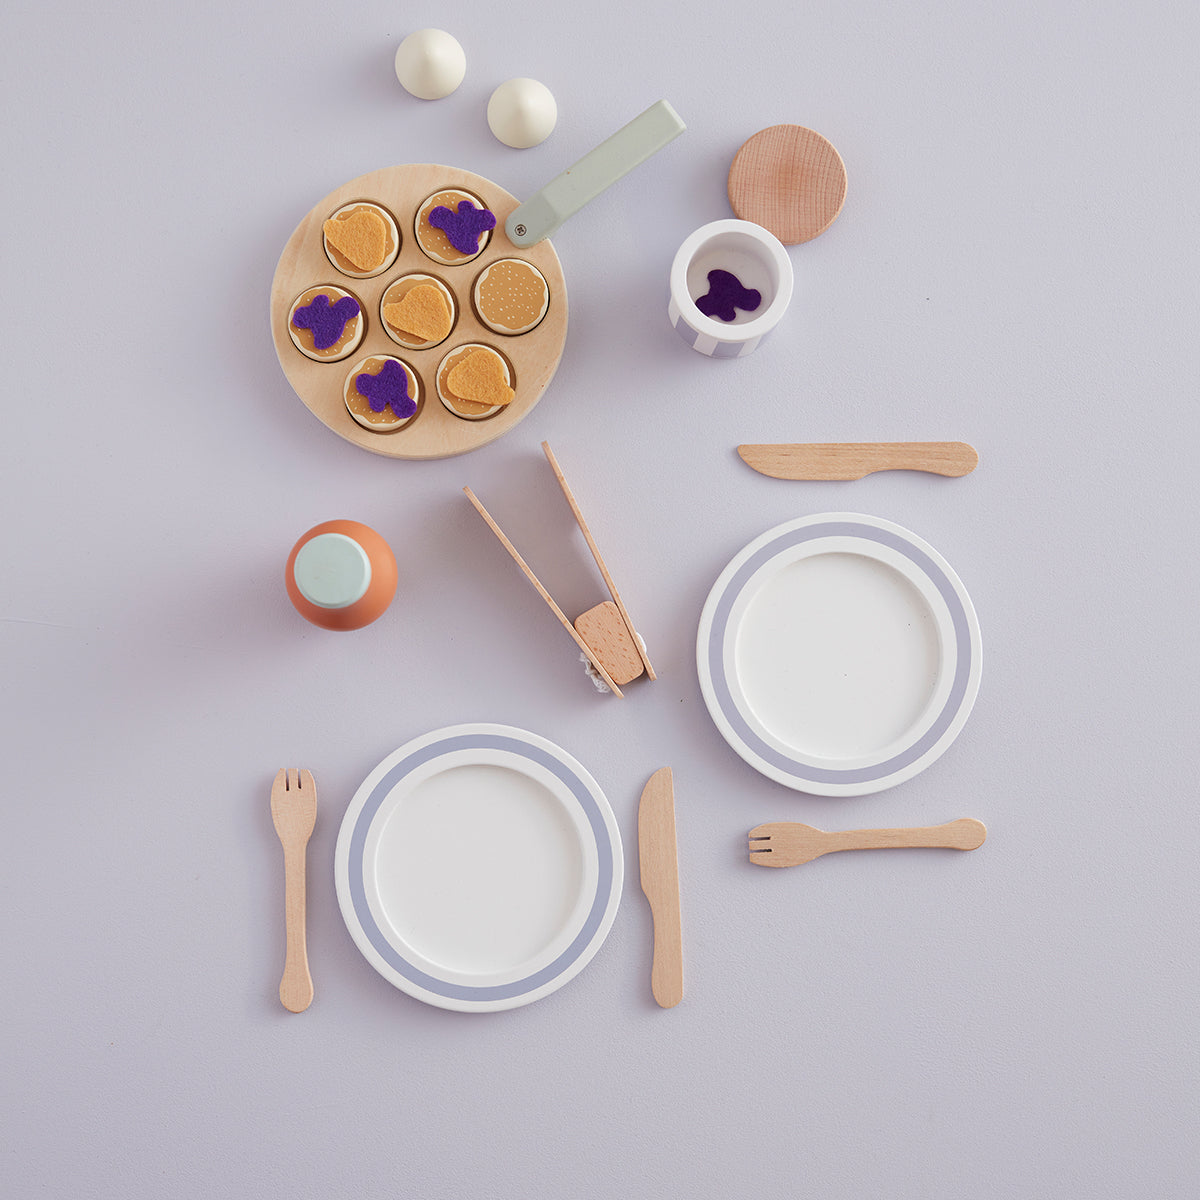 Met de Kid’s Concept Zweedse pannenkoekenset zet jouw kindje een heerlijke maaltijd op tafel. In Zweden heten deze lekkere pannenkoekjes ‘Plättar’ en bij deze speelset zit alles wat je nodig hebt om dit te maken. Leuk als extra uitbreiding voor de speelkeuken! VanZus.